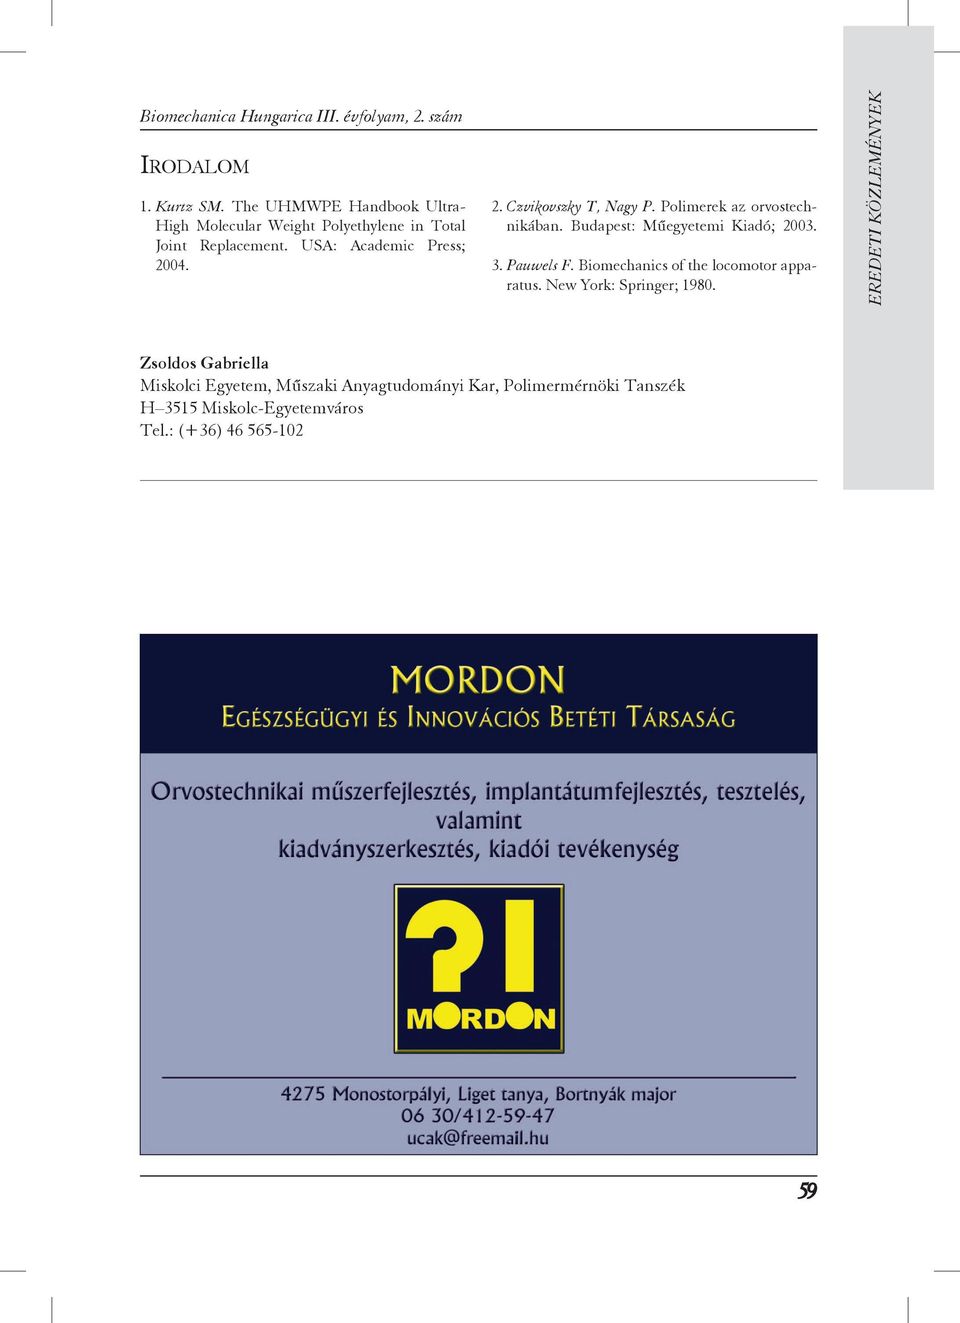 04. 2. Czvikovszky T, Nagy P. Polimerek az orvostechnikában. Budapest: Műegyetemi Kiadó; 2003. 3. Pauwels F.